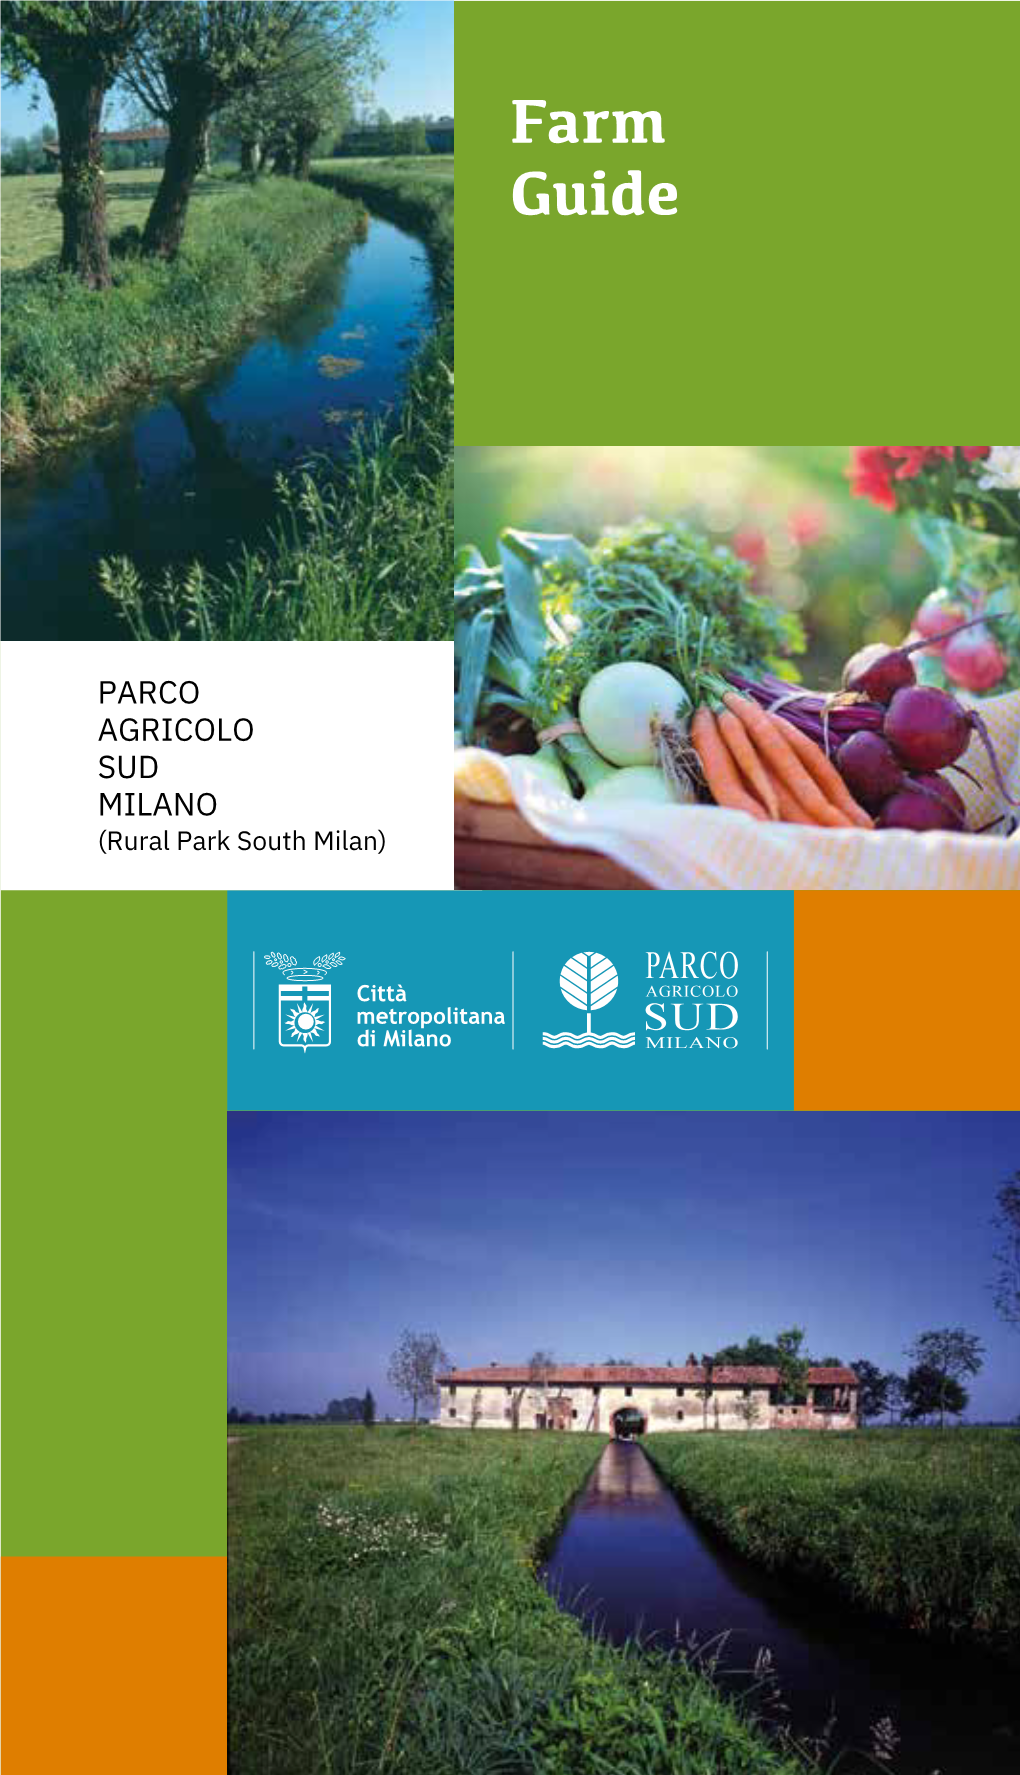 Farm Guide Parco Agricolo Sud Milano 2019 Edition Published by Parco Agricolo Sud Milano Governing Institution: Città Metropolitana Di Milano